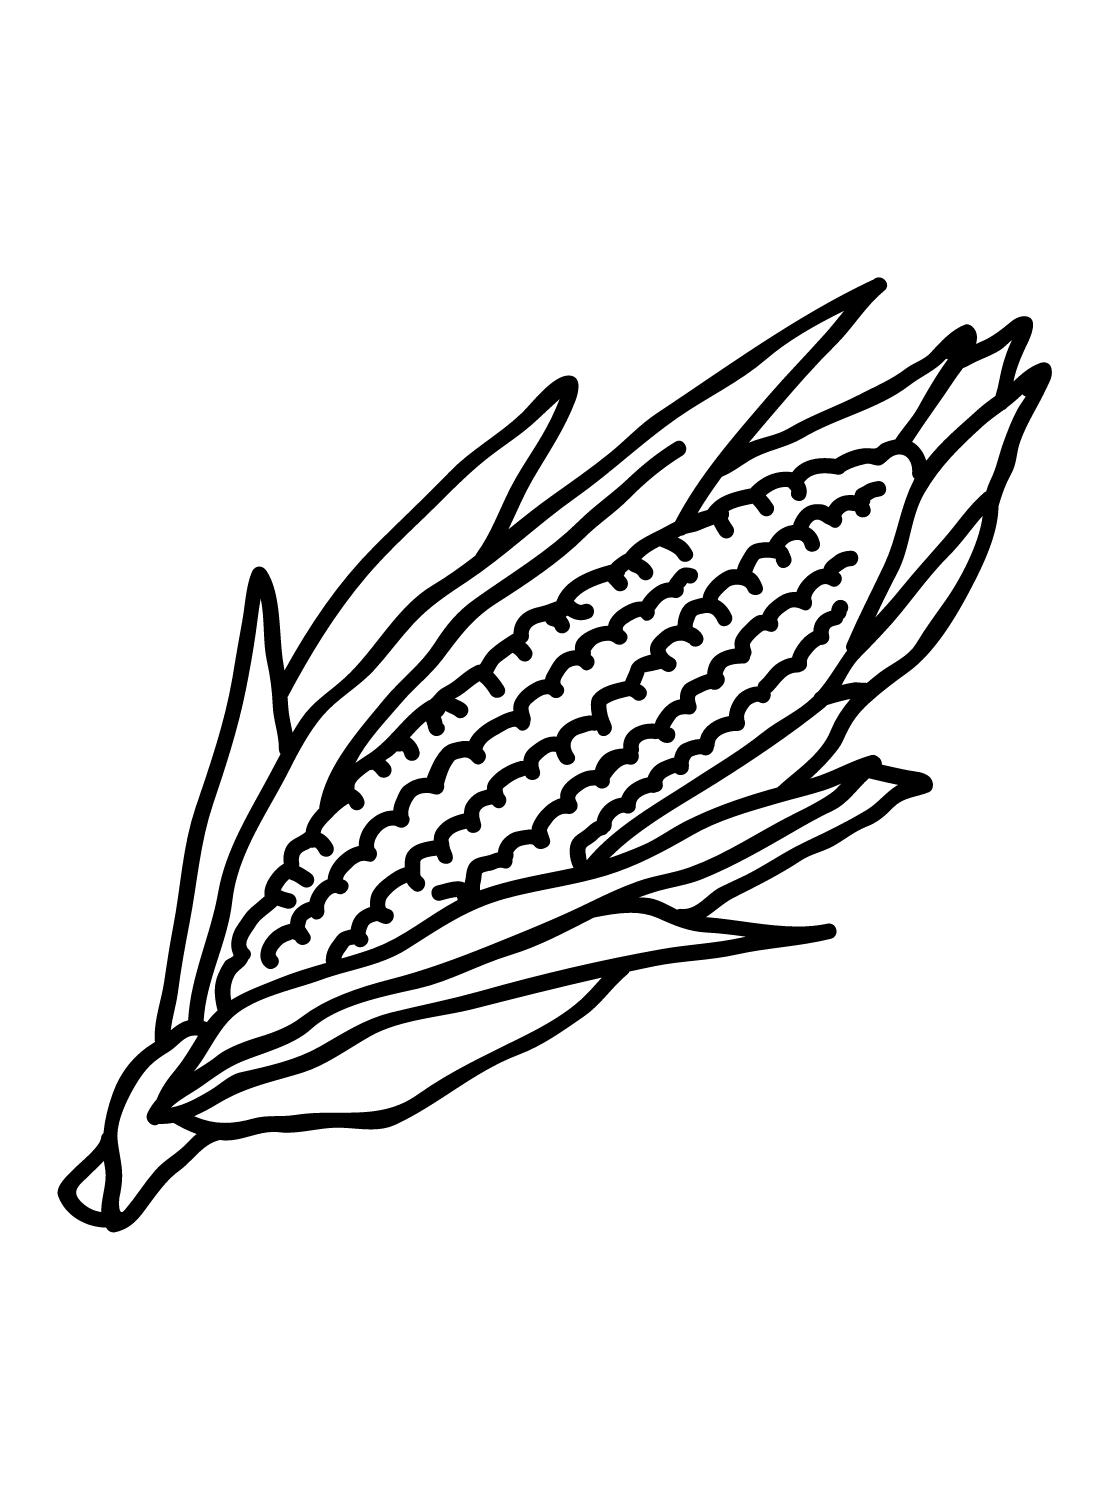 Бесплатная распечатка кукурузы из кукурузы